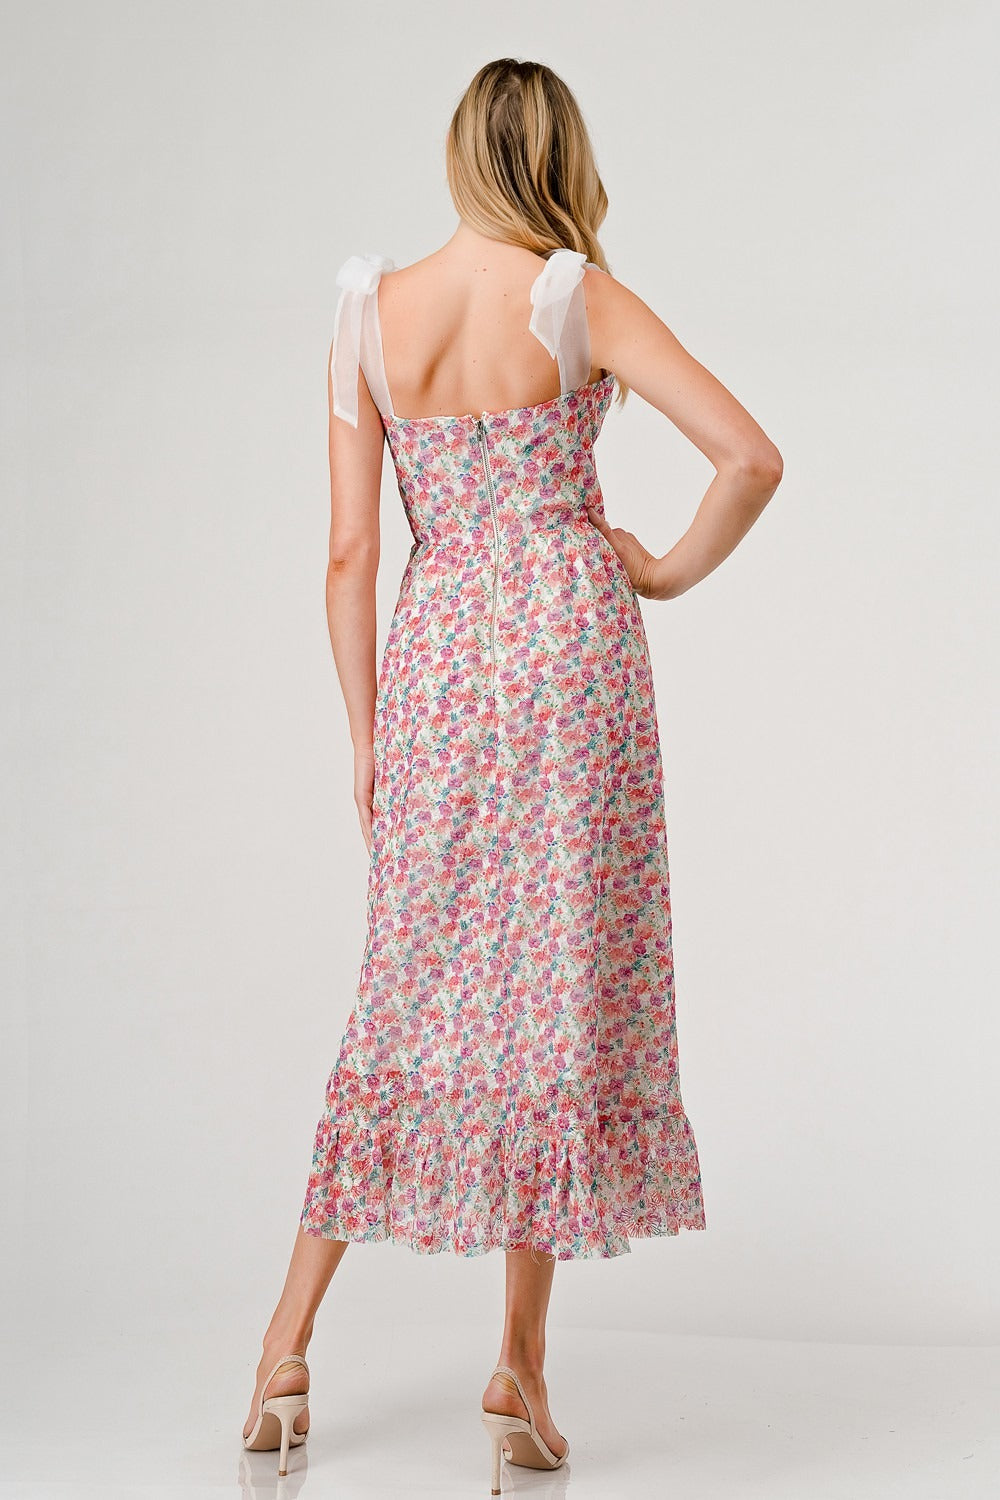 Floral Textured Dress